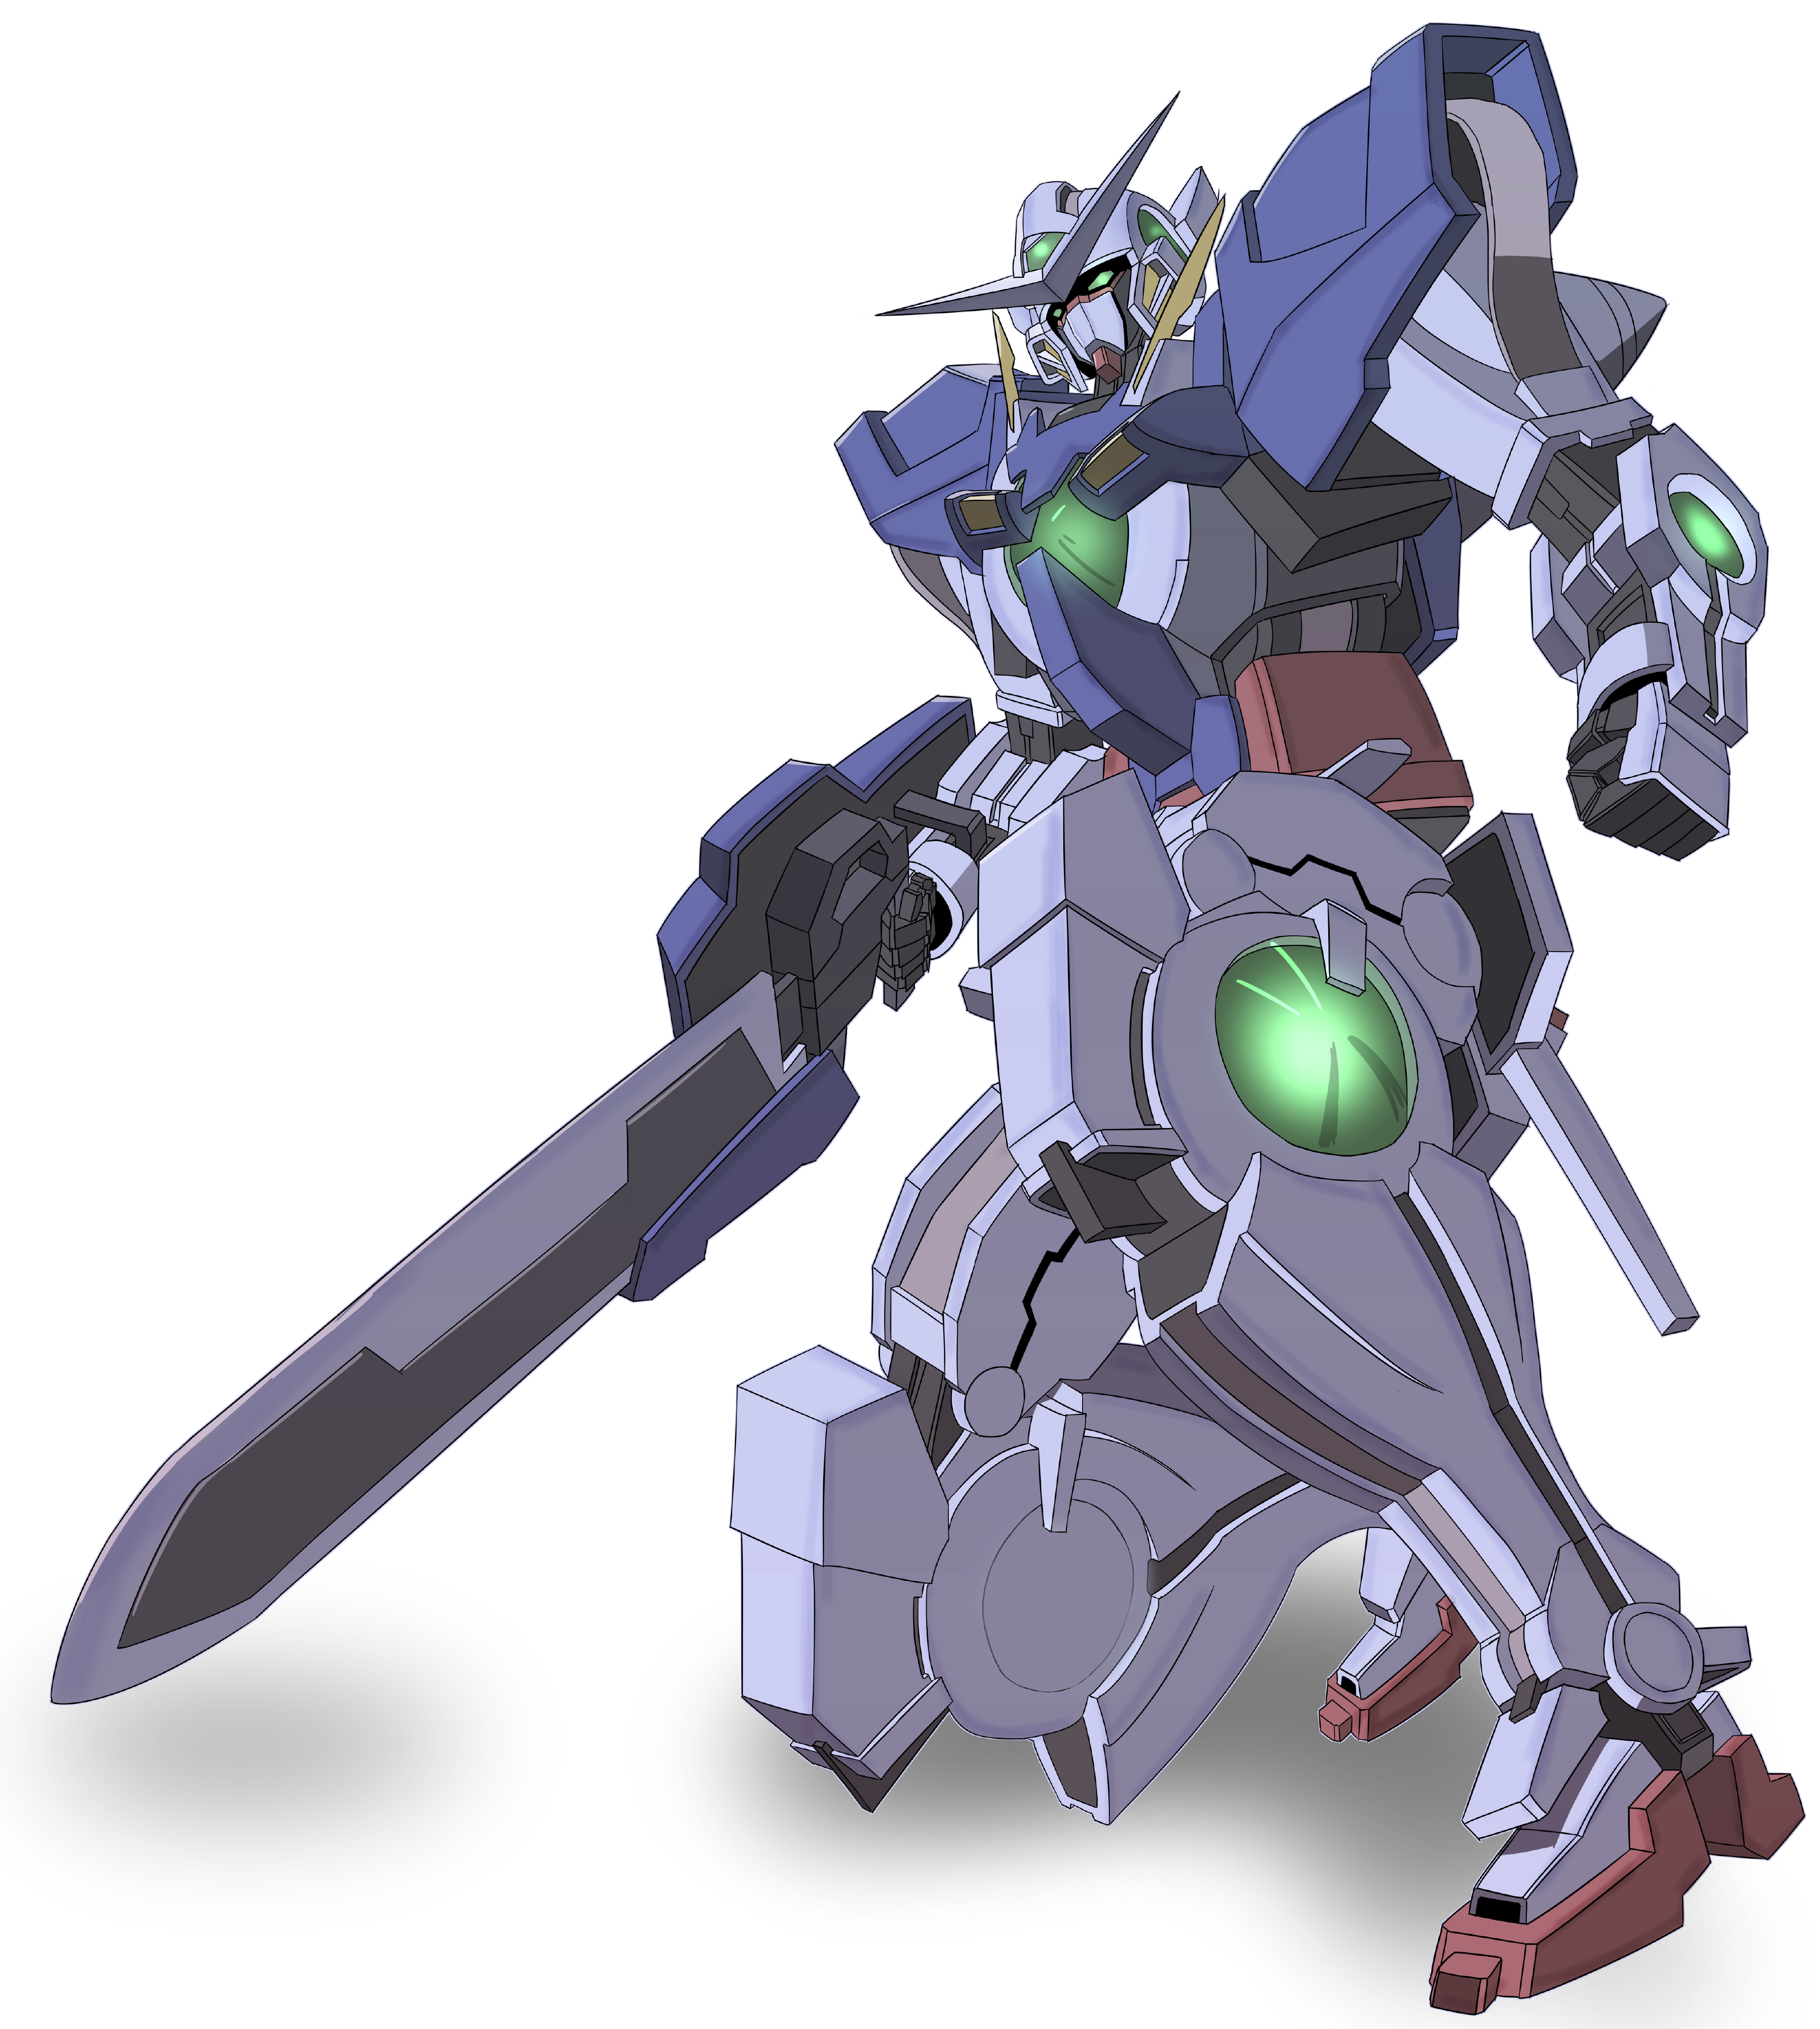 Anime 3675x4096 anime mechs Gundam Mobile Suit Gundam 00 Super Robot Taisen Gundam Exia artwork digital art fan art